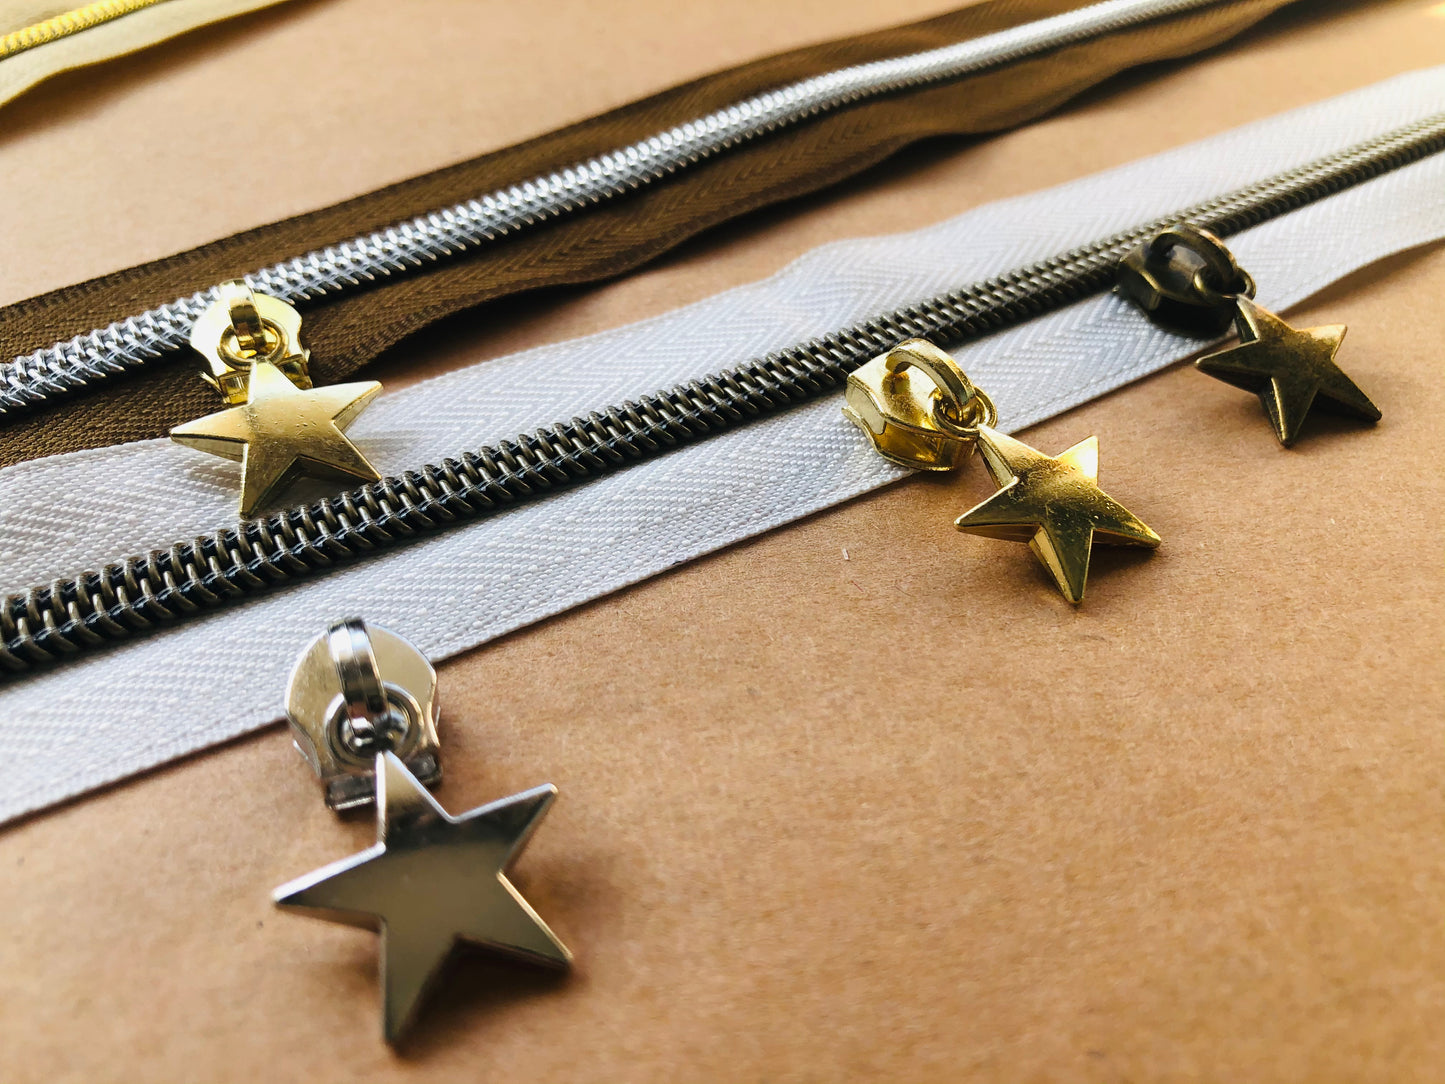 Star zipper pulls, Size 5 zipper pulls for nylon zipper tapes, zipper pulls in antique brass, sliver, gold, rose gold, gun metal